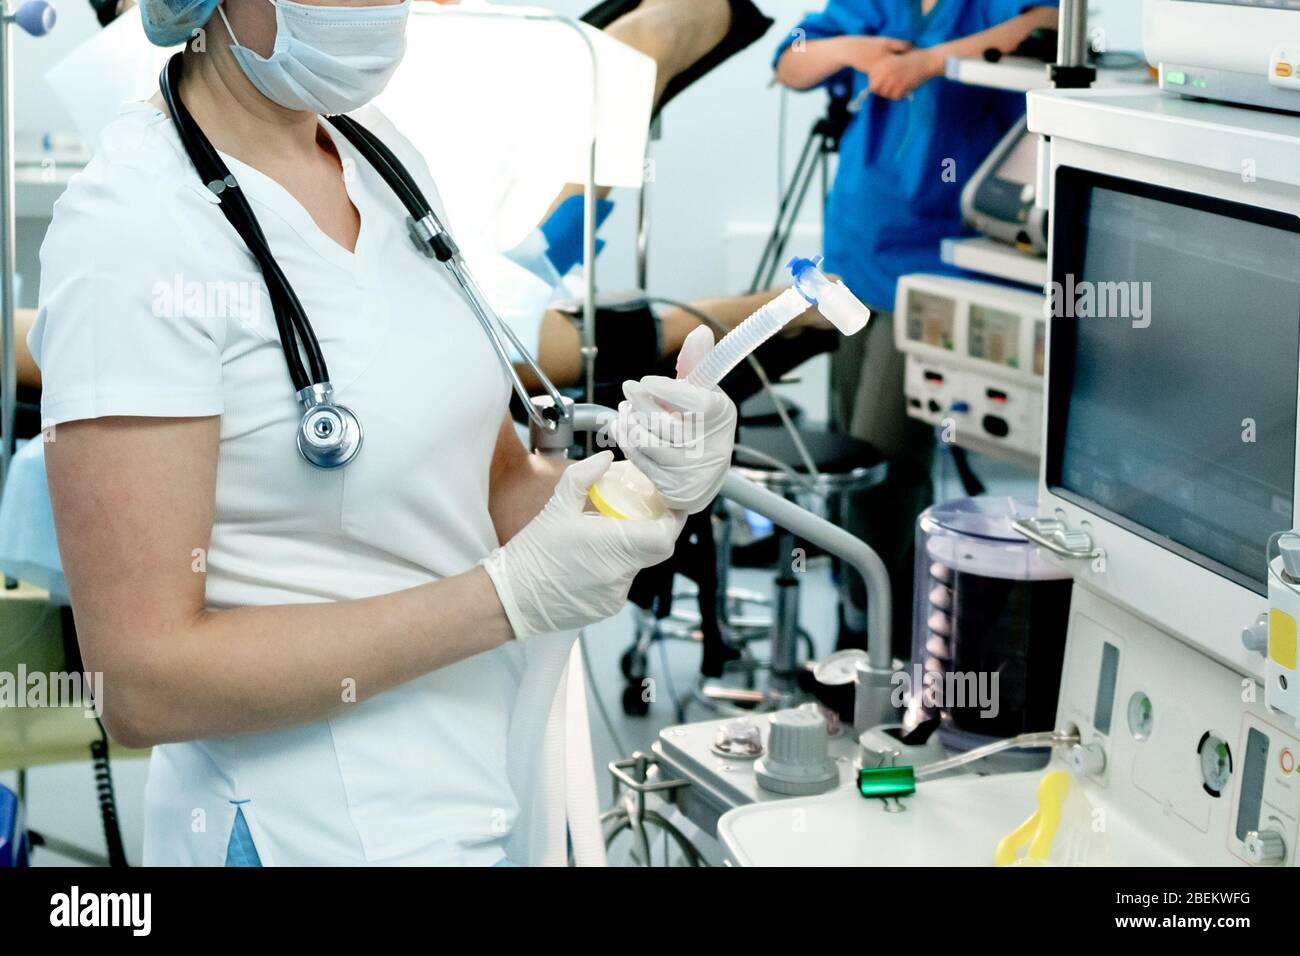 Un médecin de soins intensifs prépare l'équipement pour la ventilation artificielle des poumons pour l'intubation chez un patient critique atteint de coronavirus. COVID-19 Banque D'Images